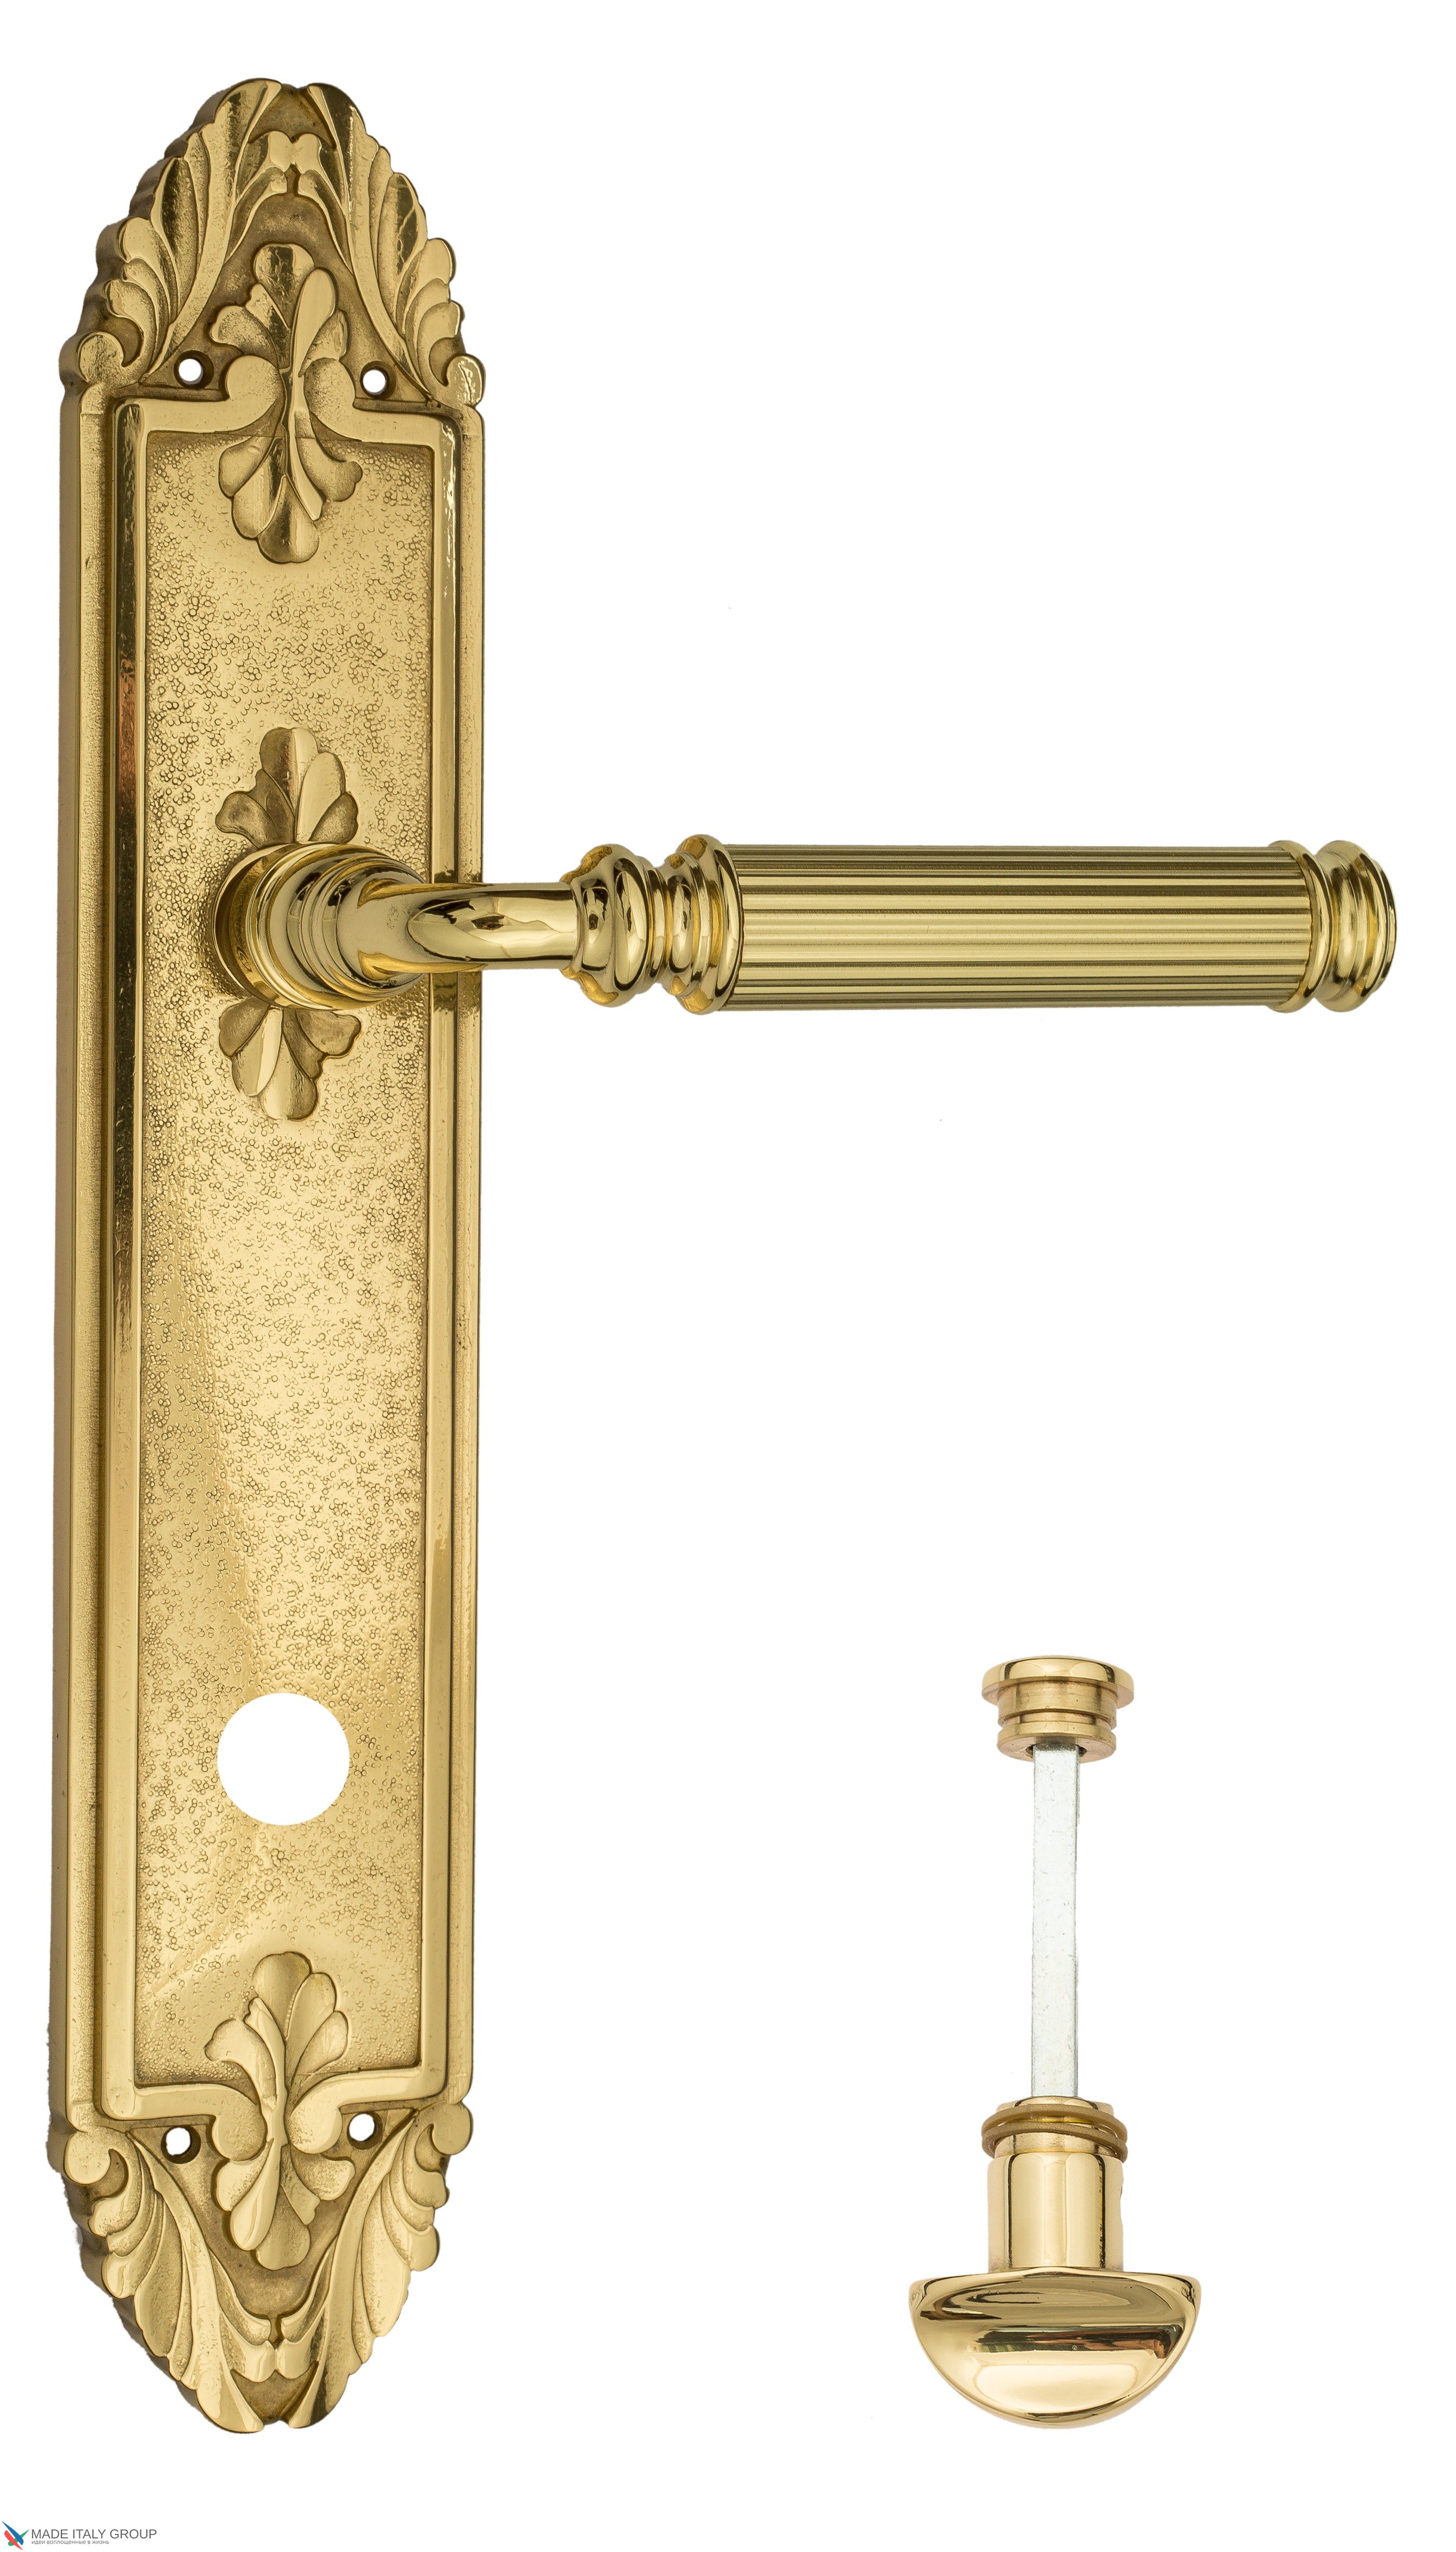 Дверная ручка Venezia "MOSCA" WC-2 на планке PL90 полированная латунь